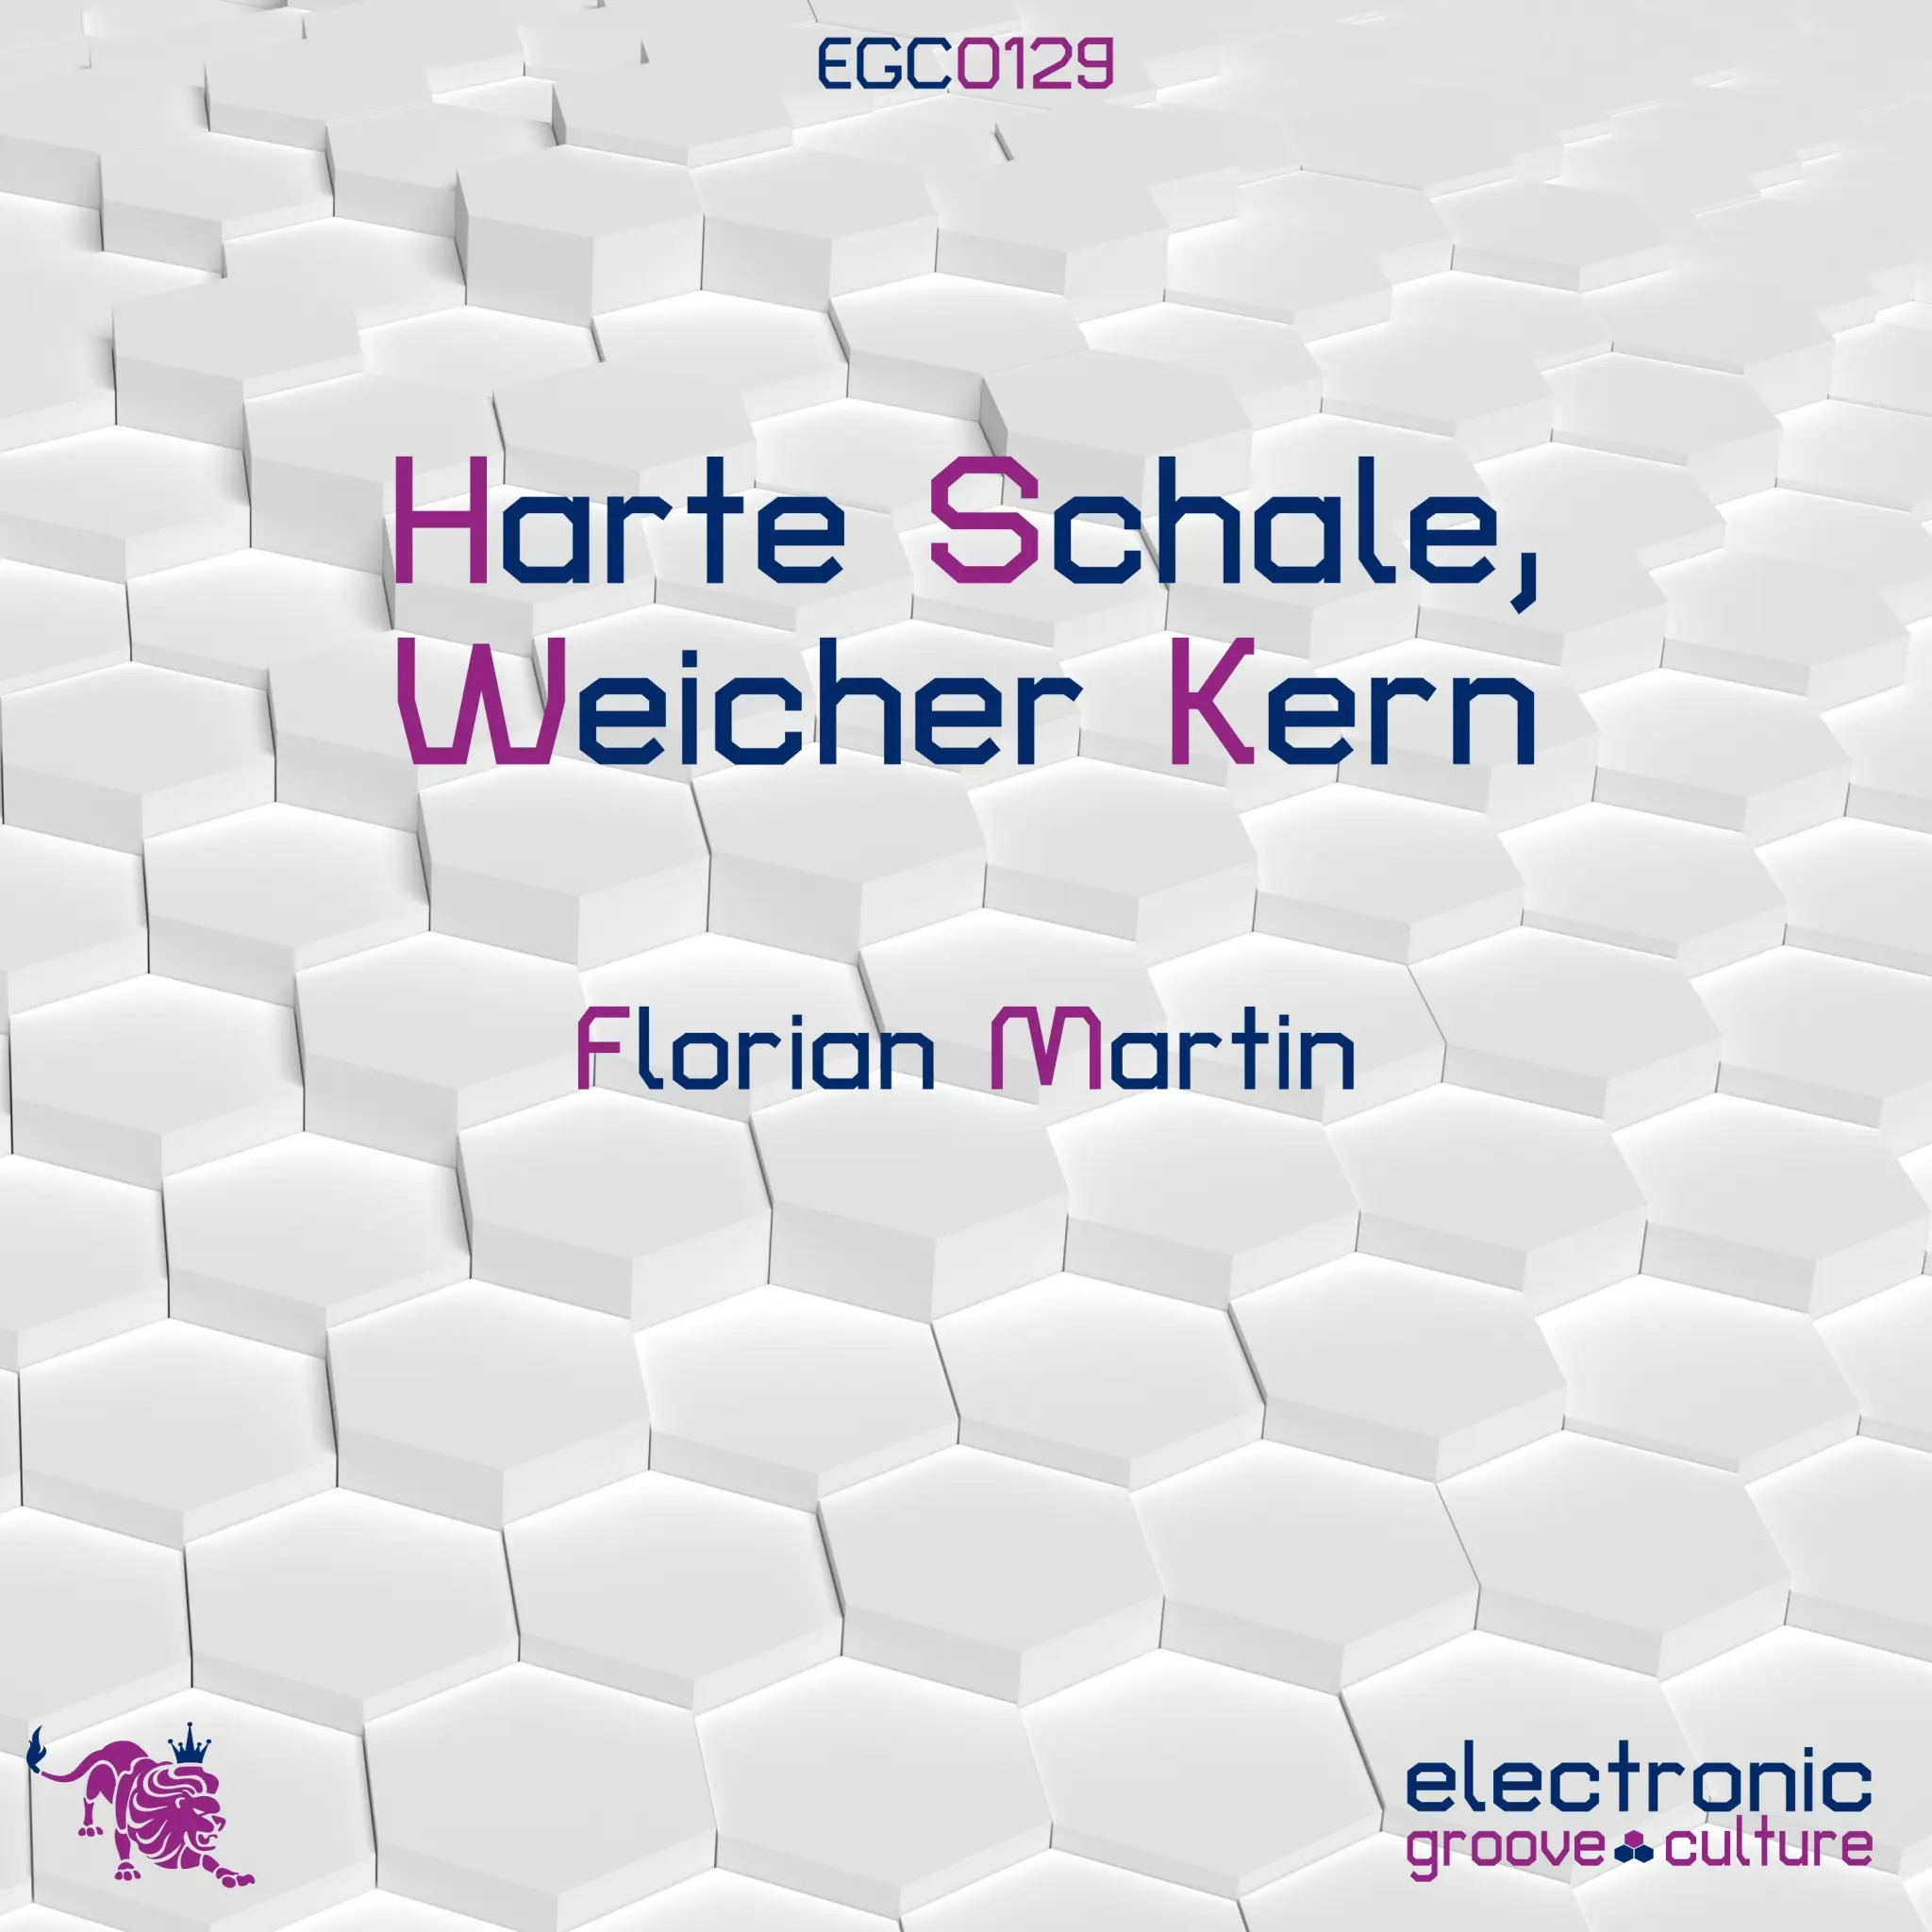 Florian Martin - Harte Schale, Weicher Kern